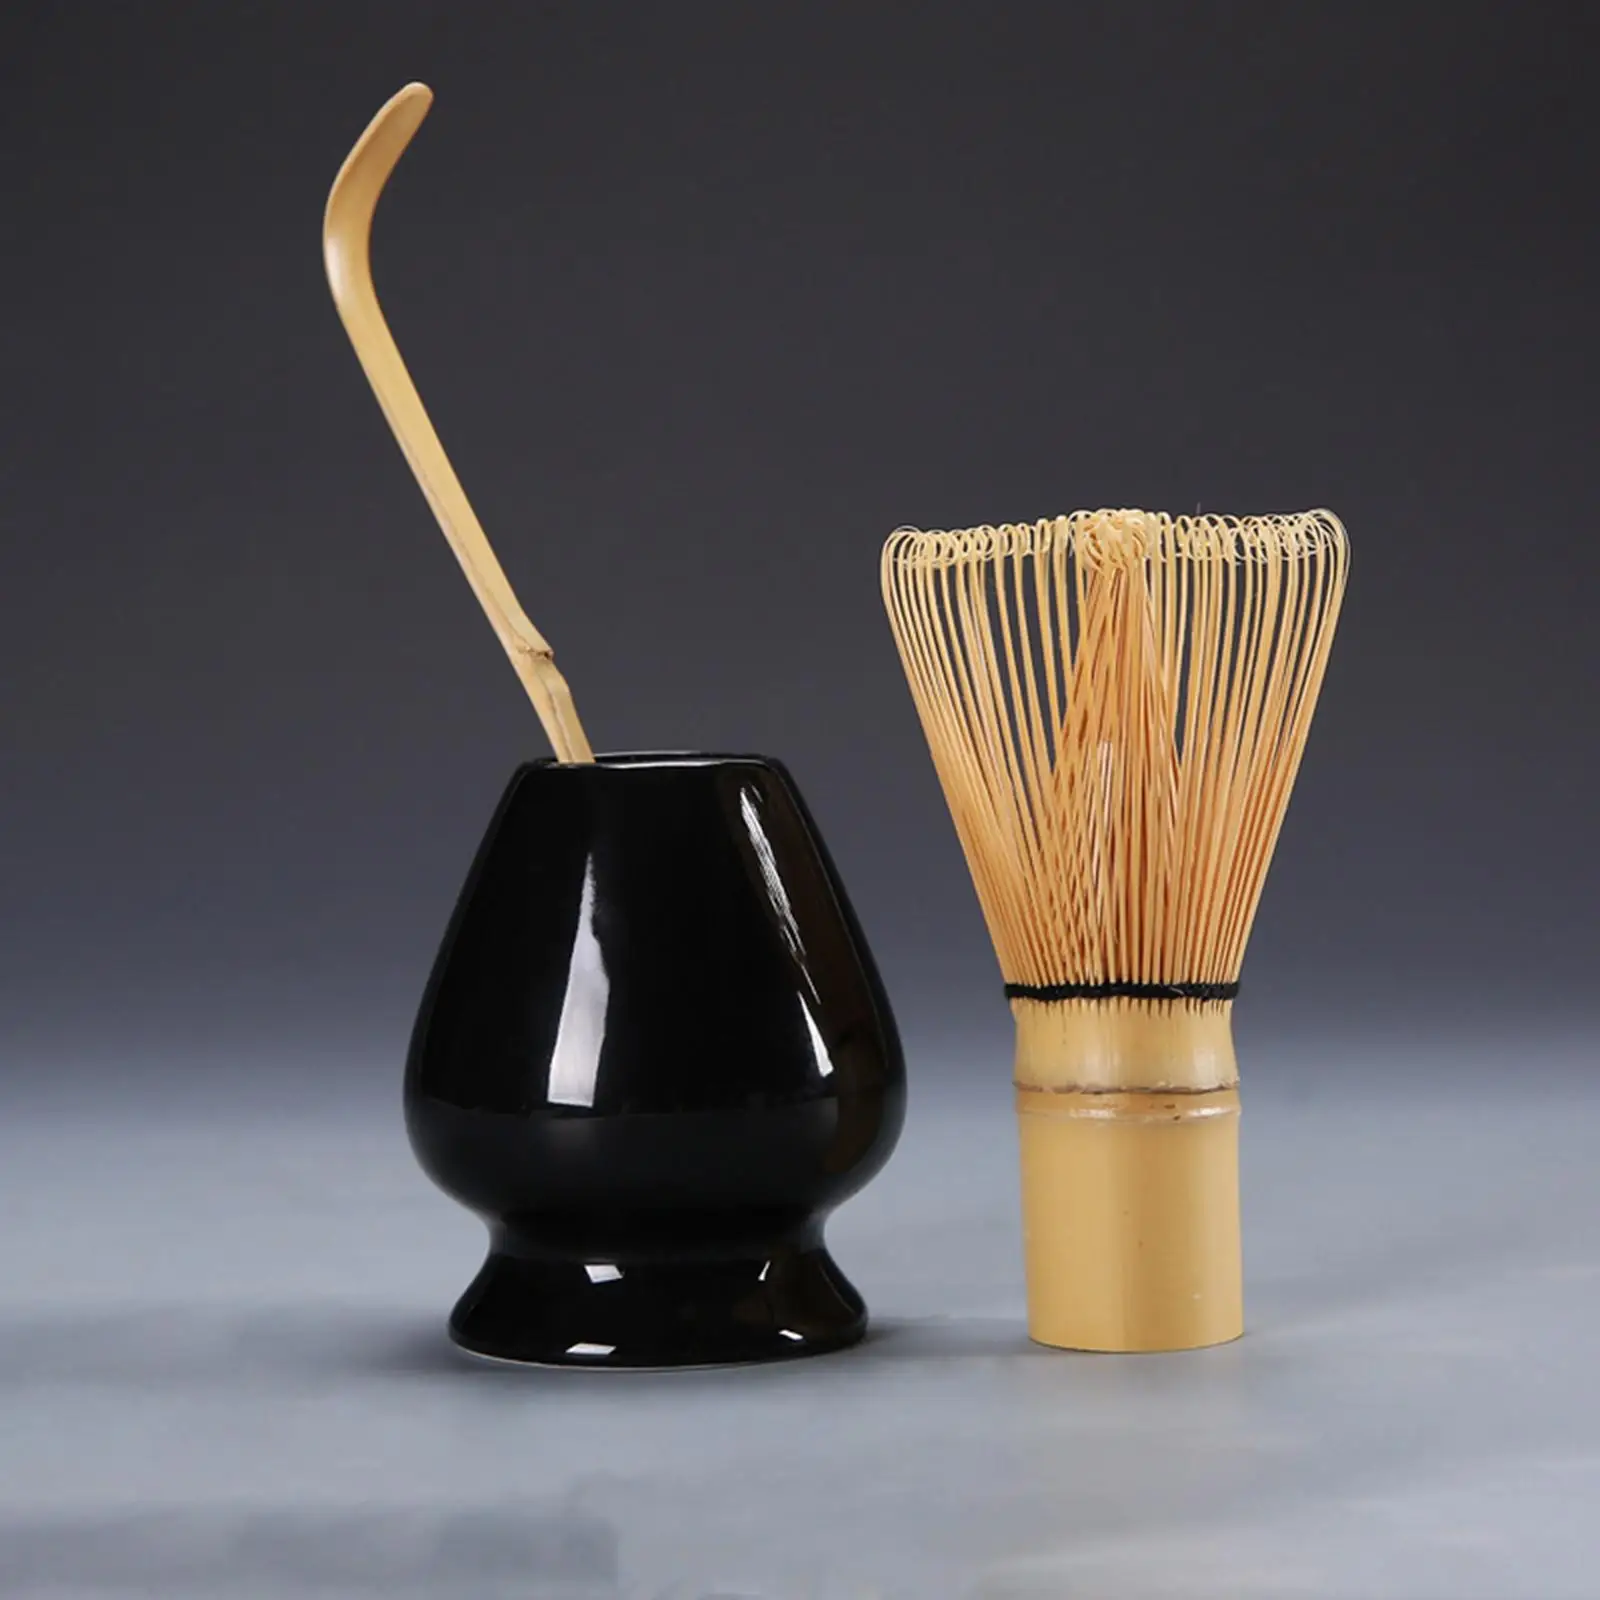 Japanese Matcha Set Matcha Whisk Bamboo Whisk Ceramic Whisk Holder Traditional